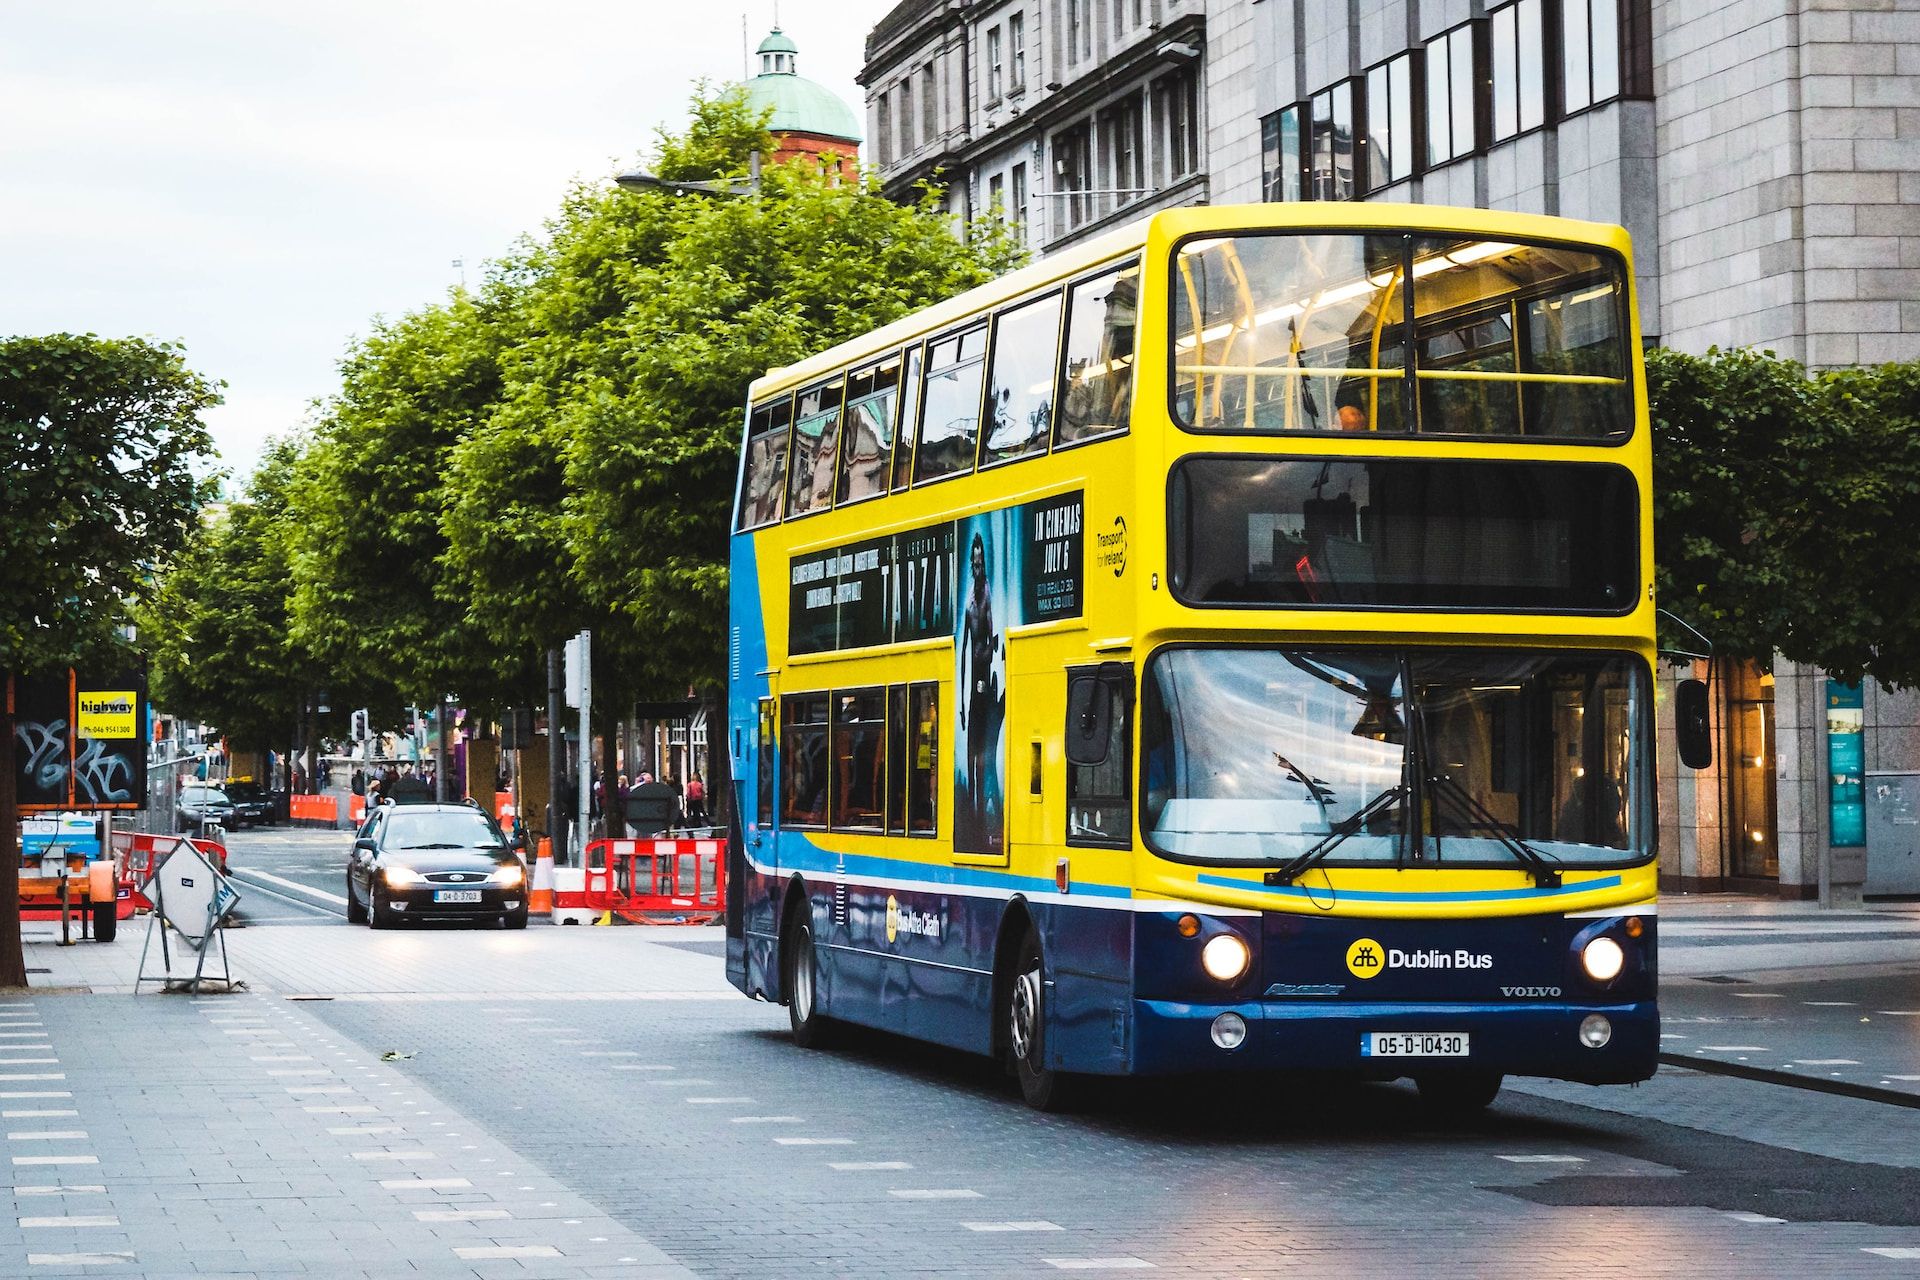 A bus in Dublin